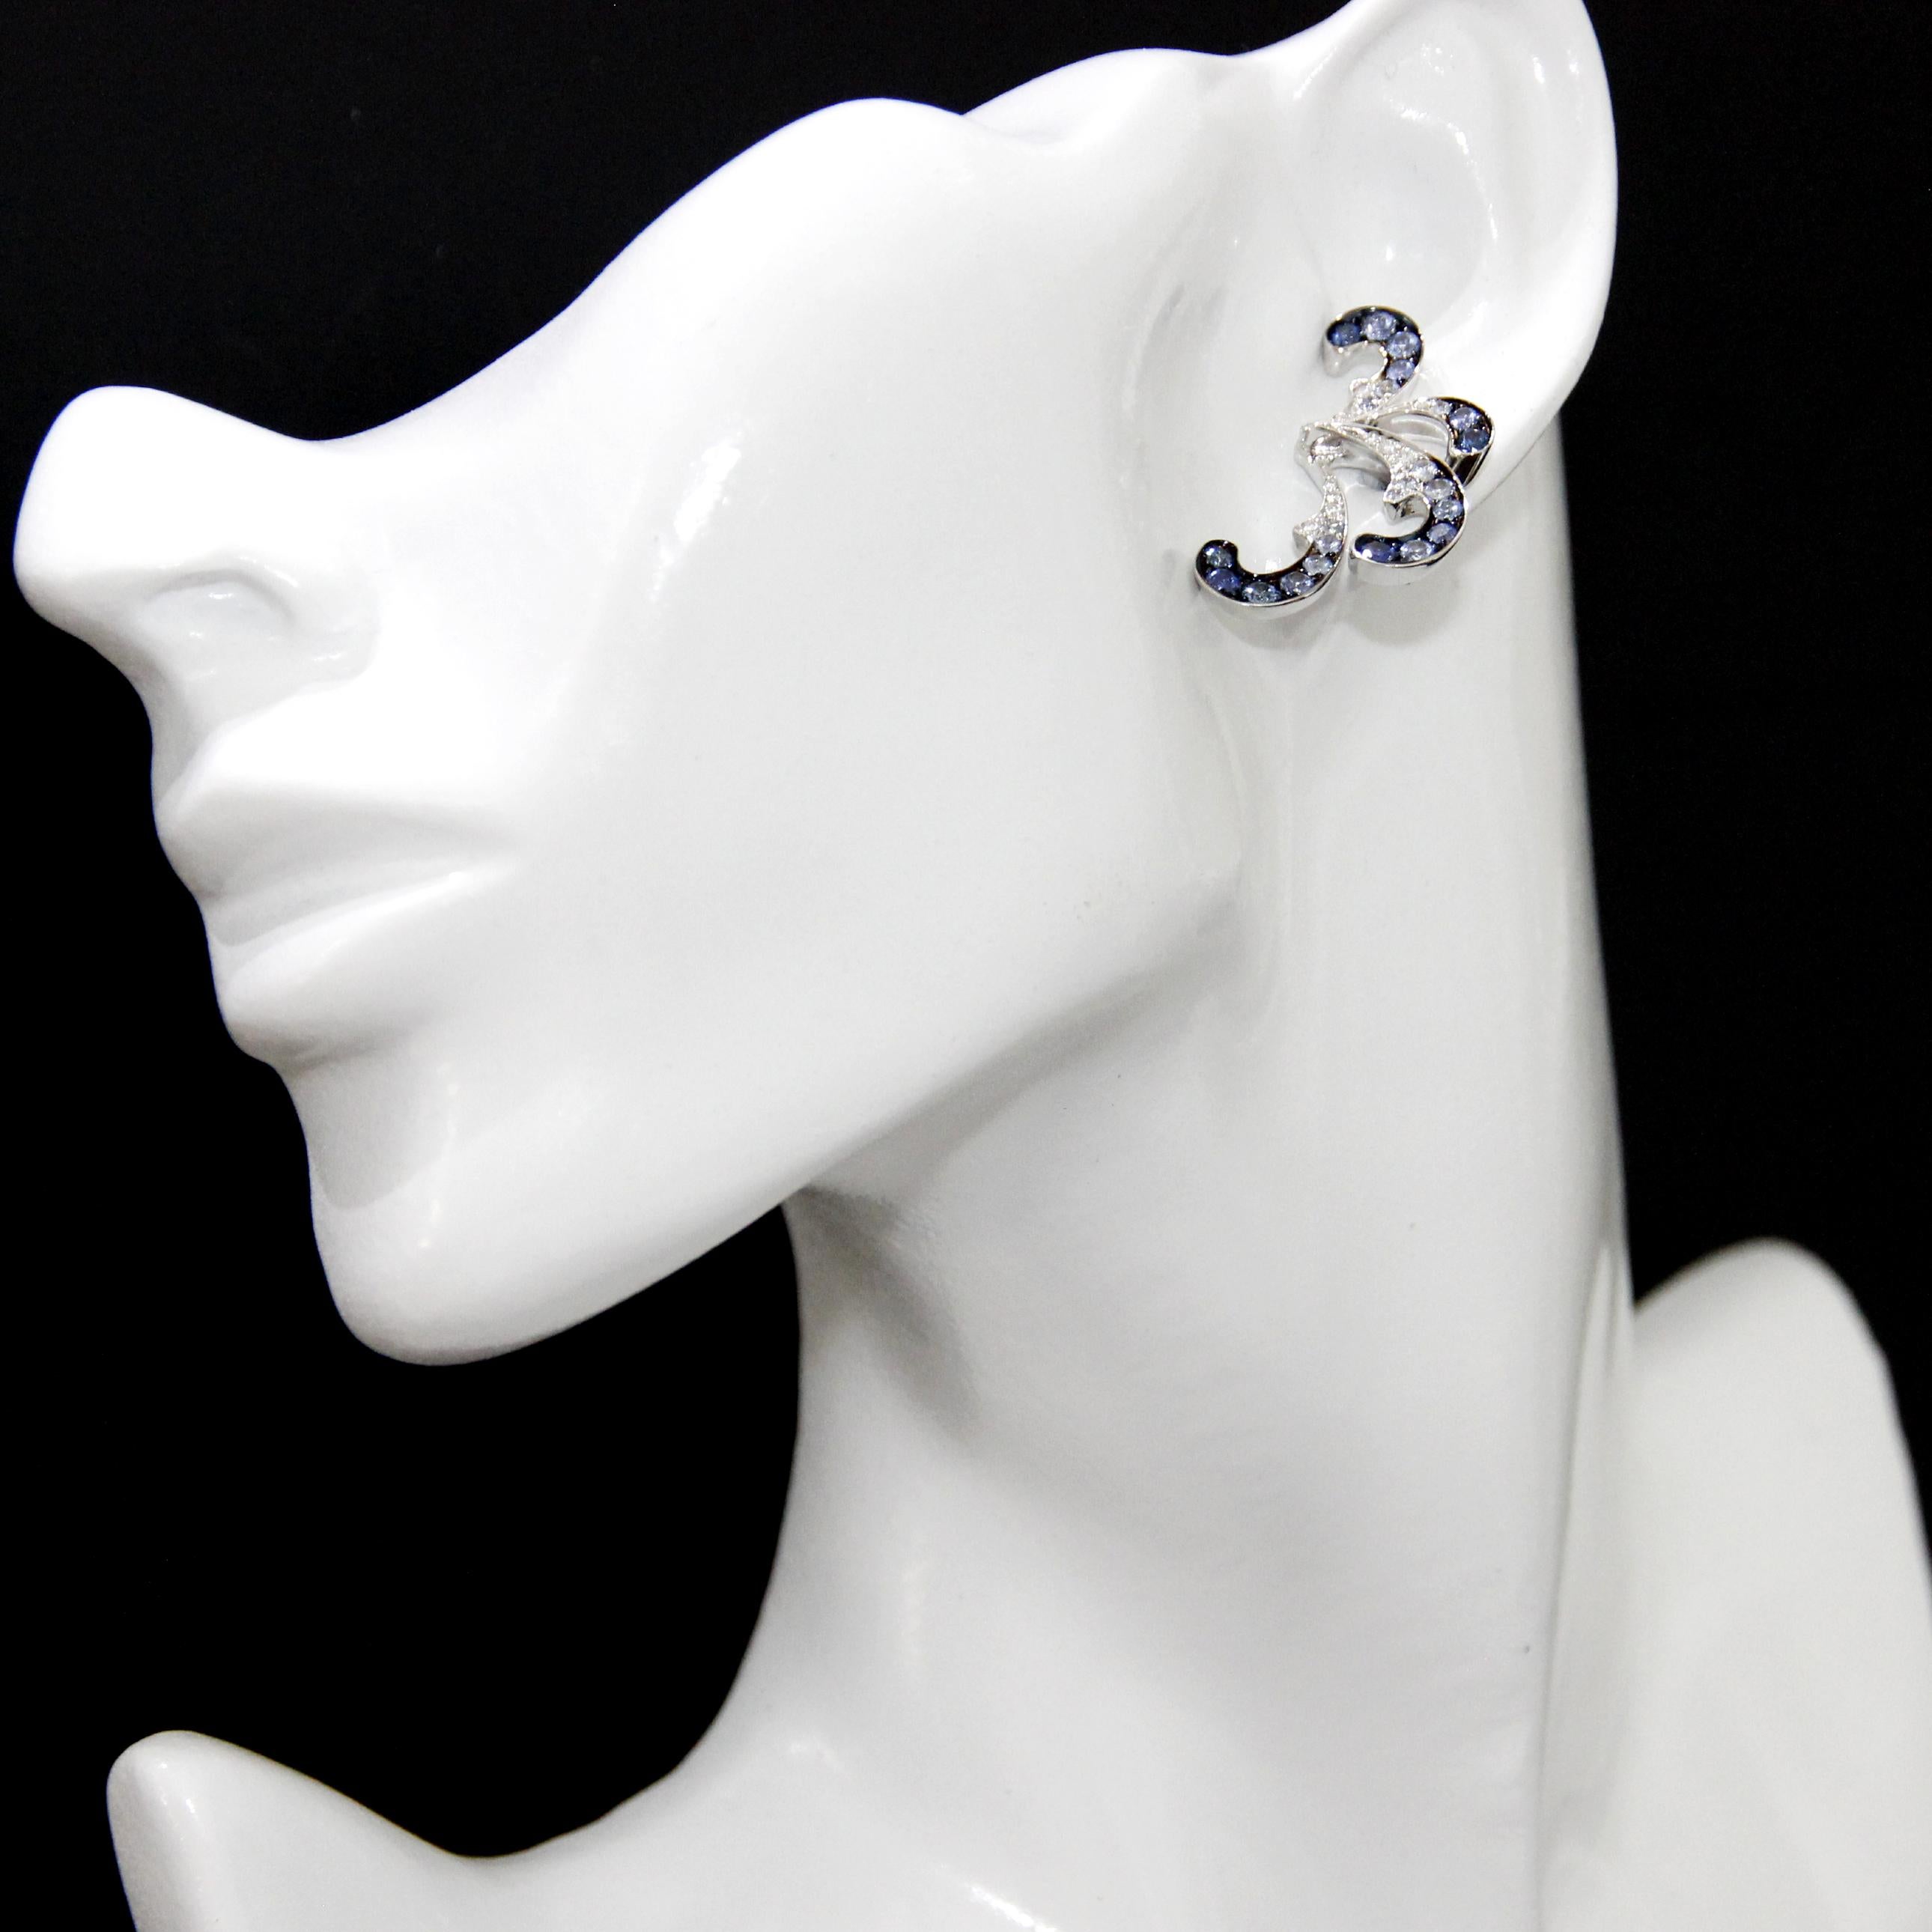 Brilliant Cut Stefan Hafner 18K White Gold, Diamonds and Blue Sapphire Earrings For Sale